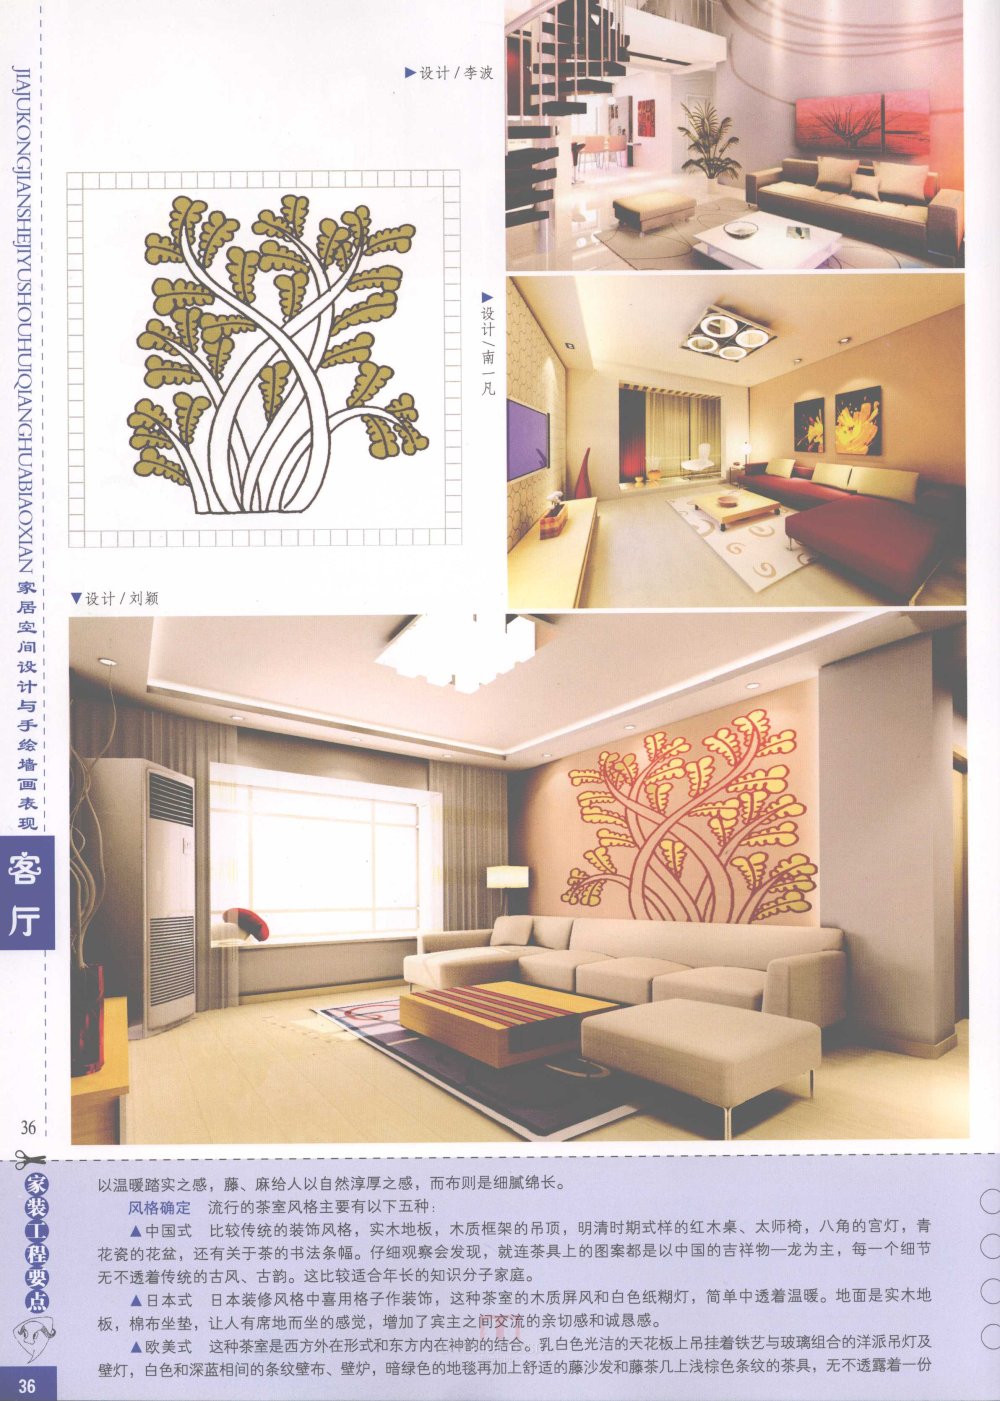 家居空间设计与手绘墙画表现客厅_家居空间设计与手绘墙画表现客厅-38.jpg